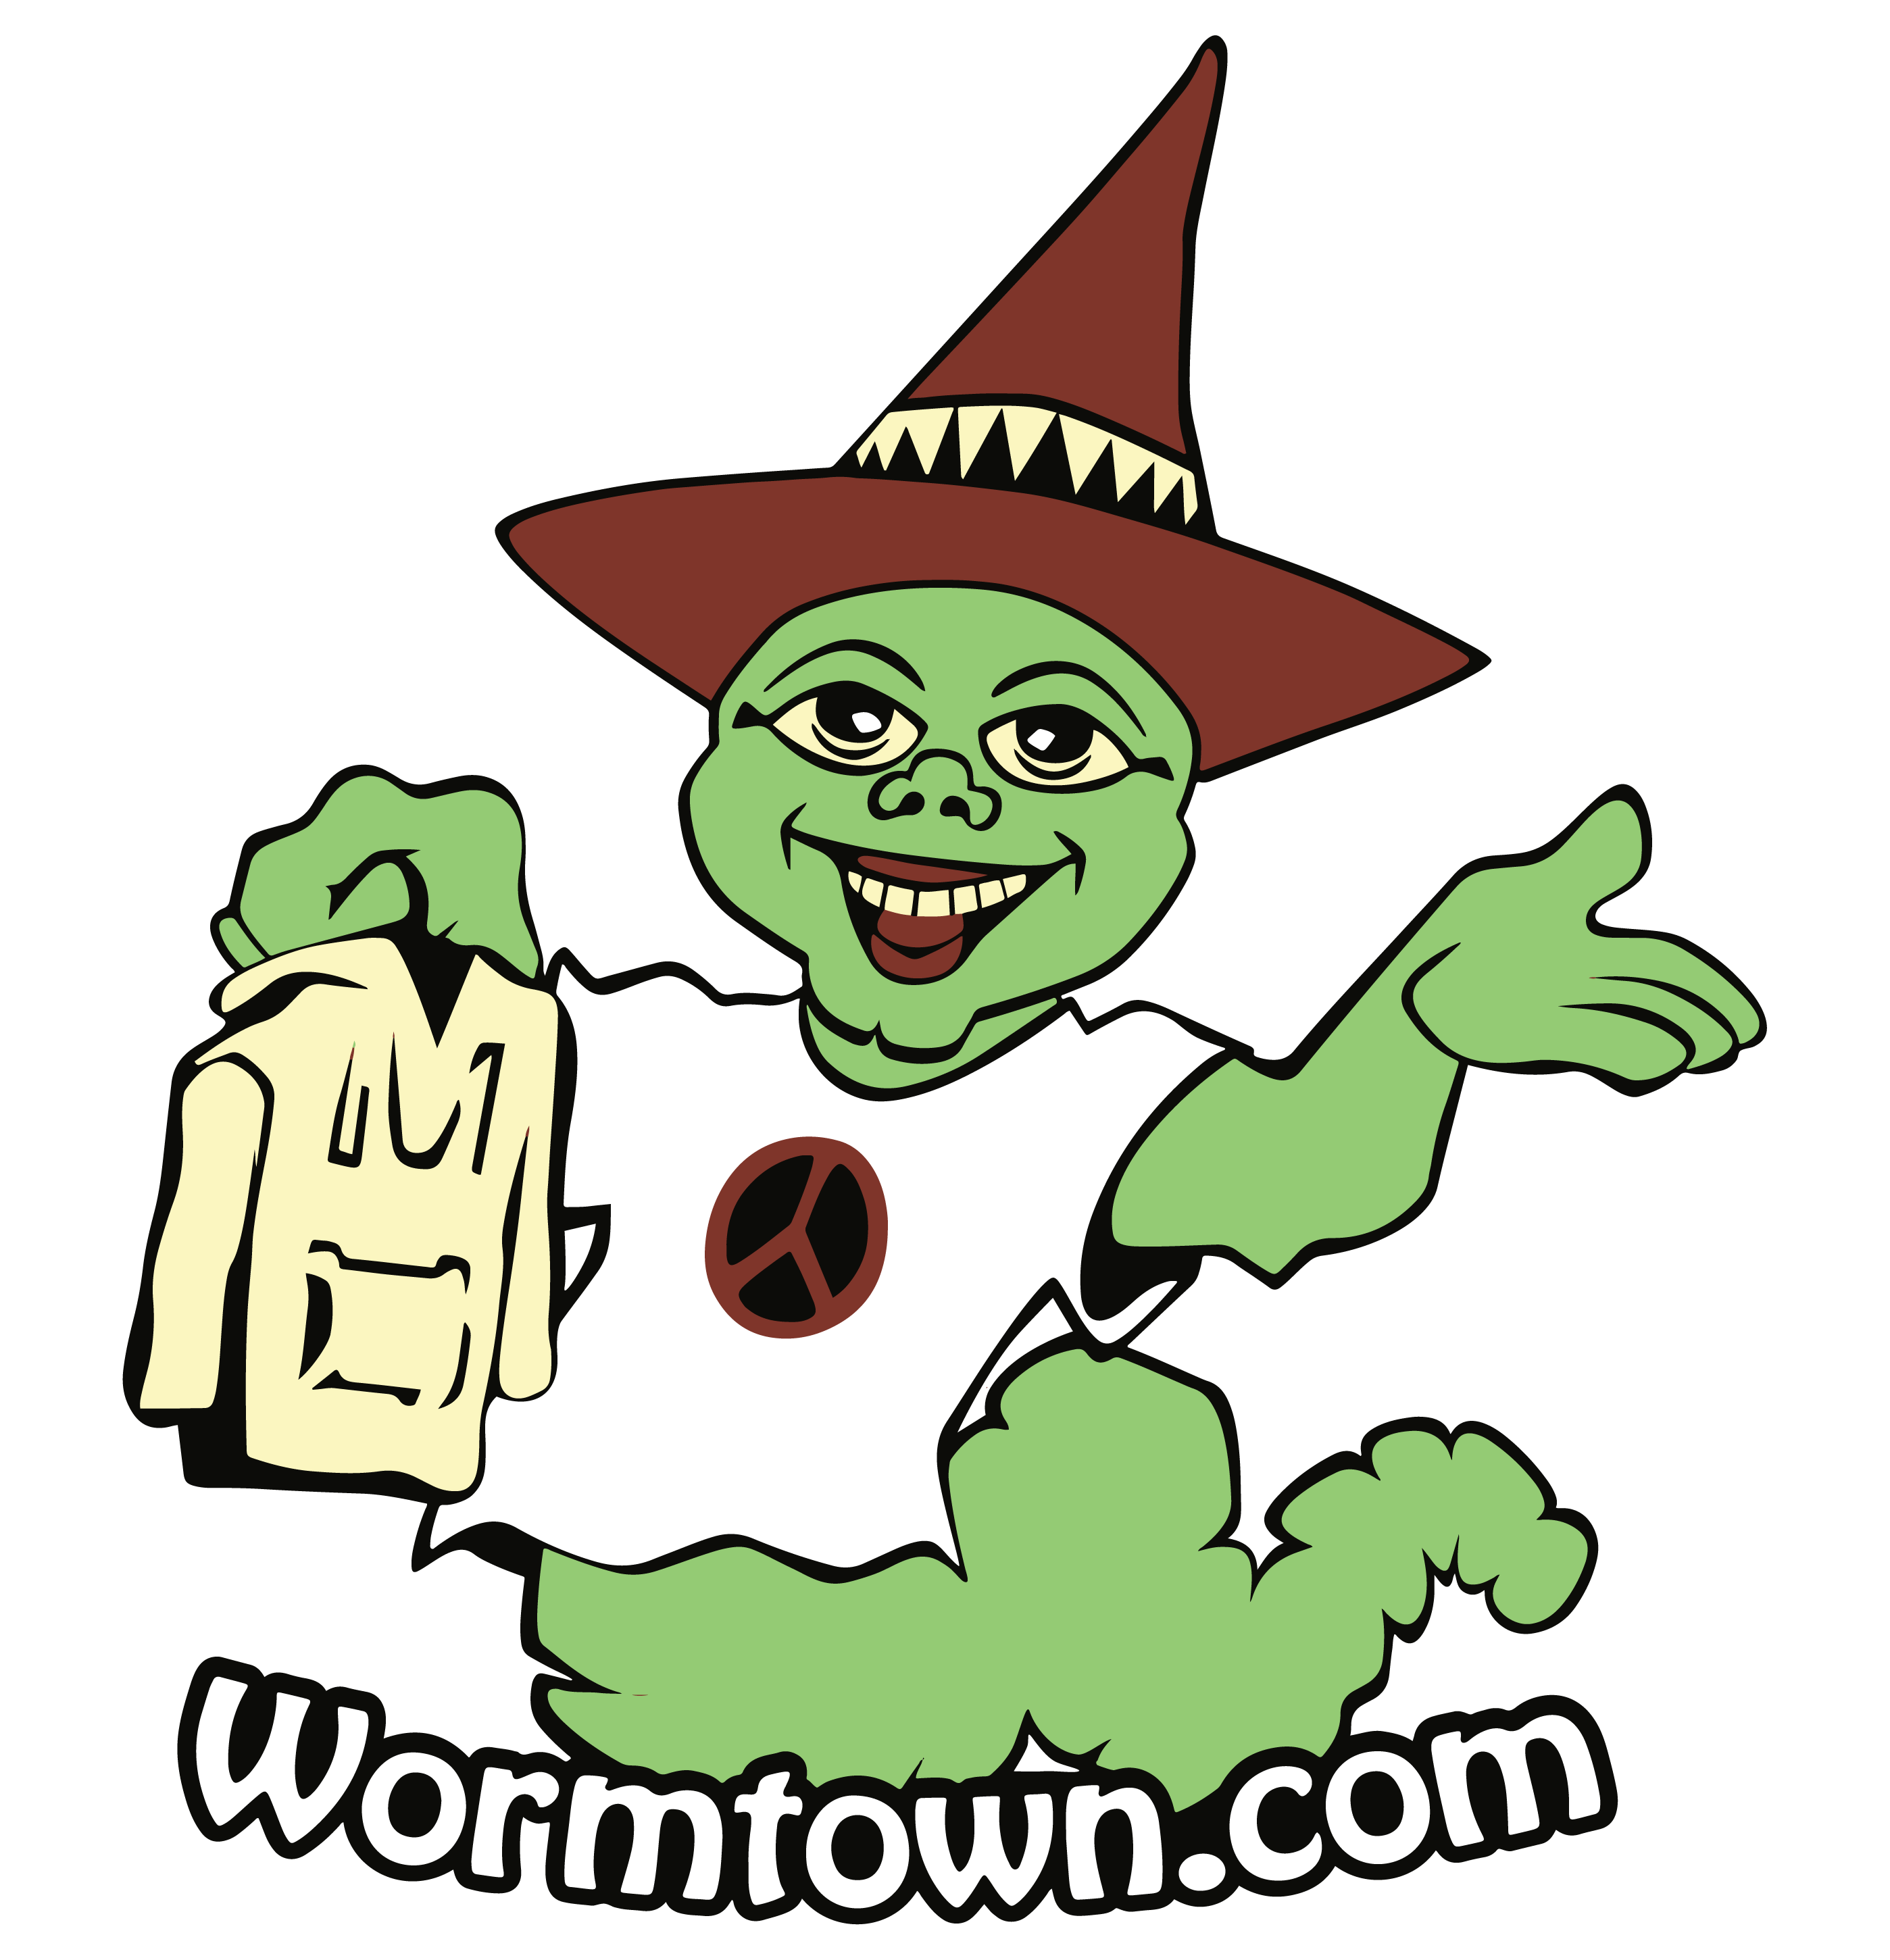 Wormtown